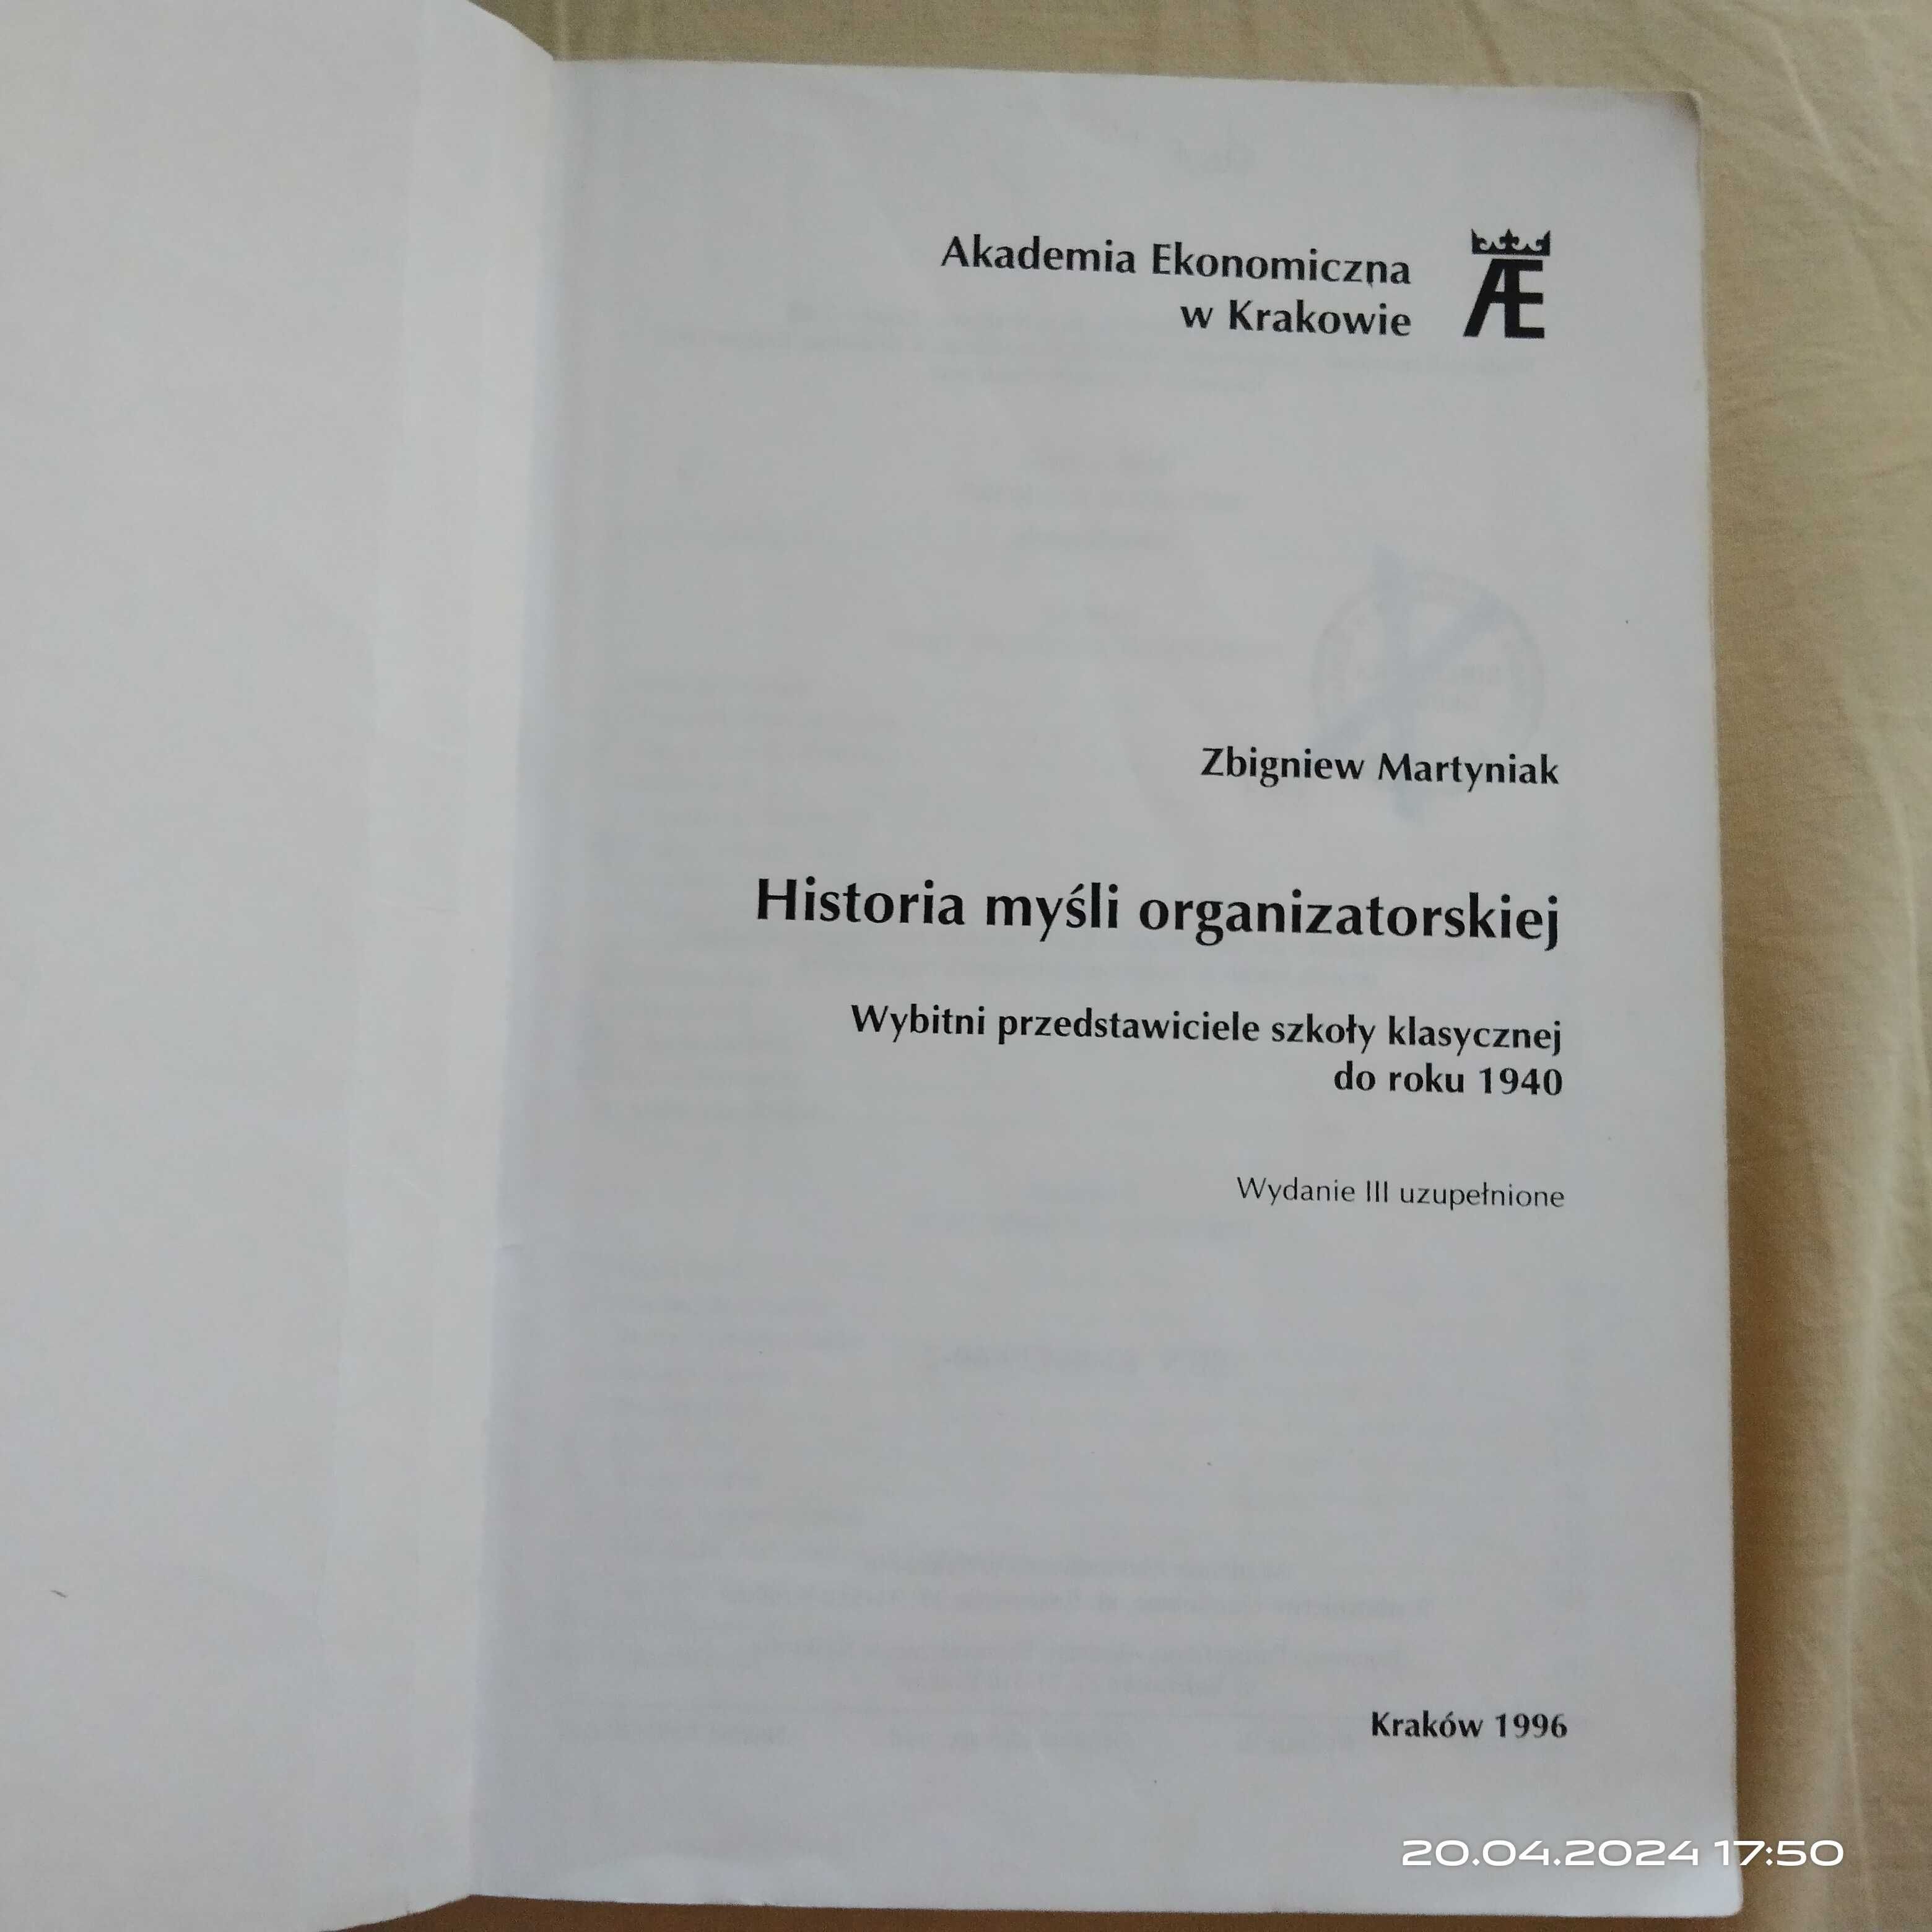 Książka "Historia myśli organizatorskiej" Z. Martyniak